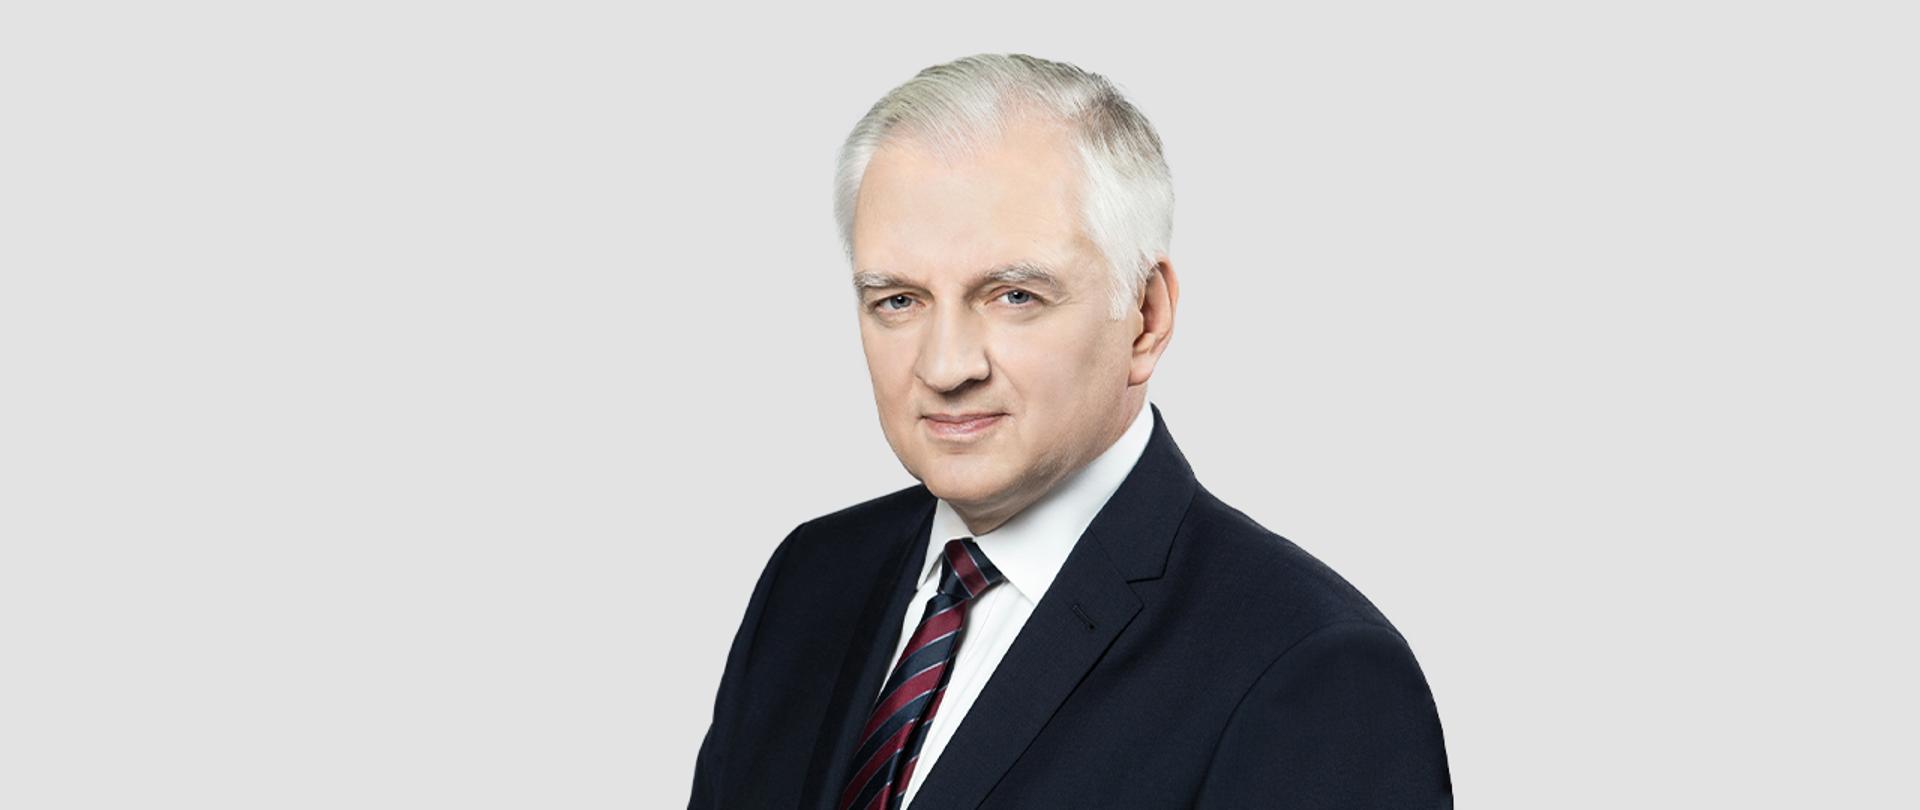 Wicepremier Jarosław Gowin w marynarce i krawacie w granatowo-czerwone paski